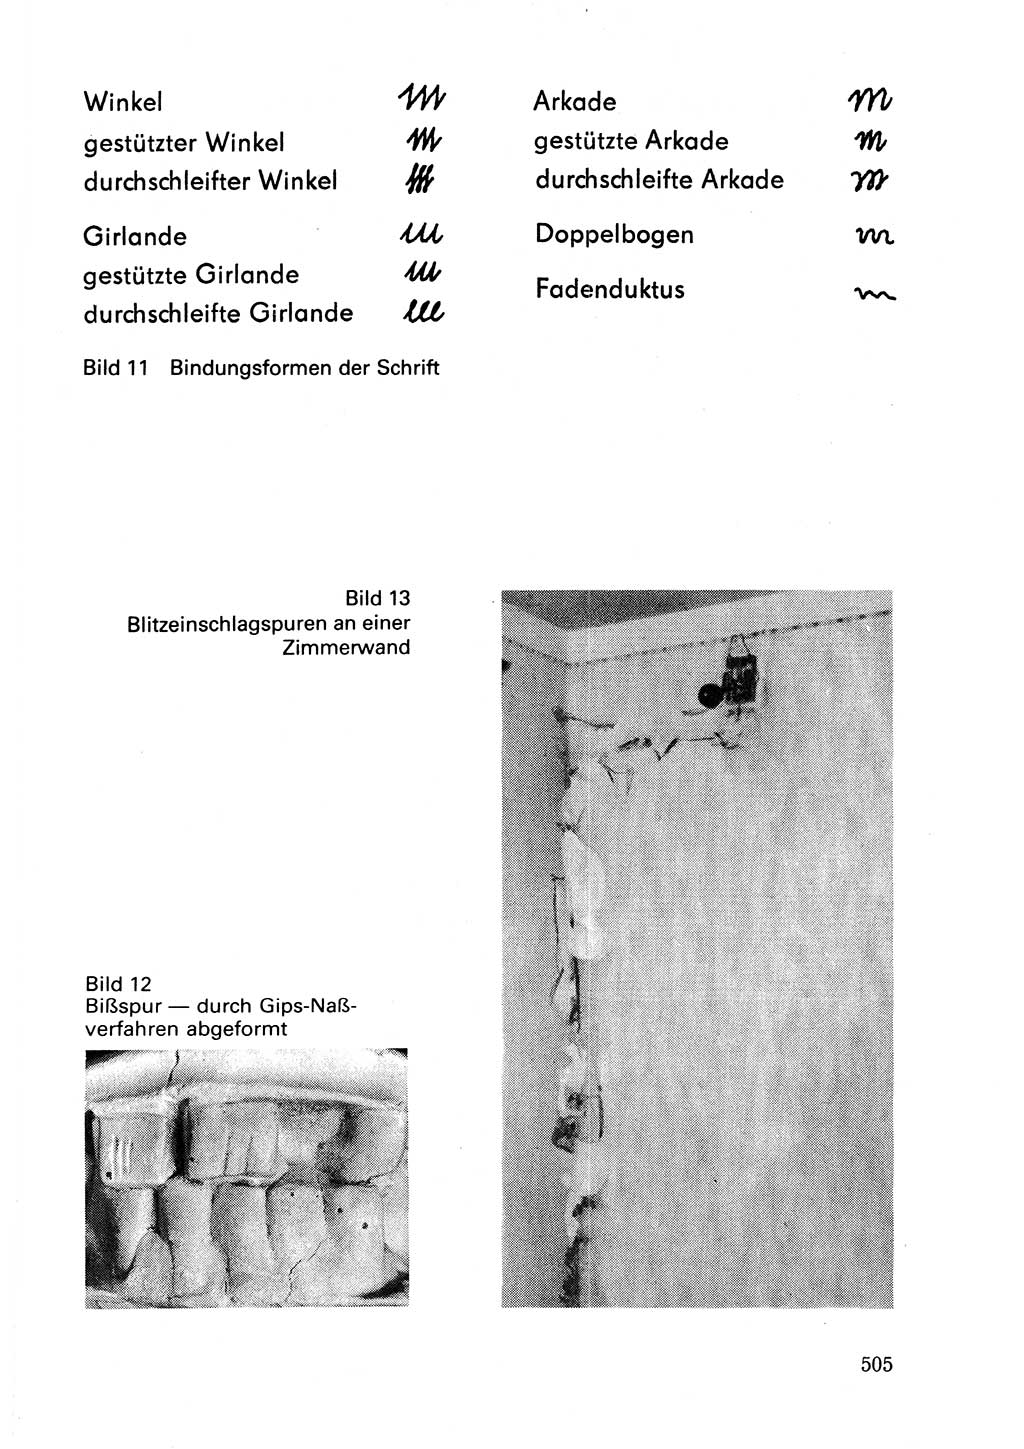 Wörterbuch der sozialistischen Kriminalistik [Deutsche Demokratische Republik (DDR)] 1981, Seite 504 (Wb. soz. Krim. DDR 1981, S. 504)